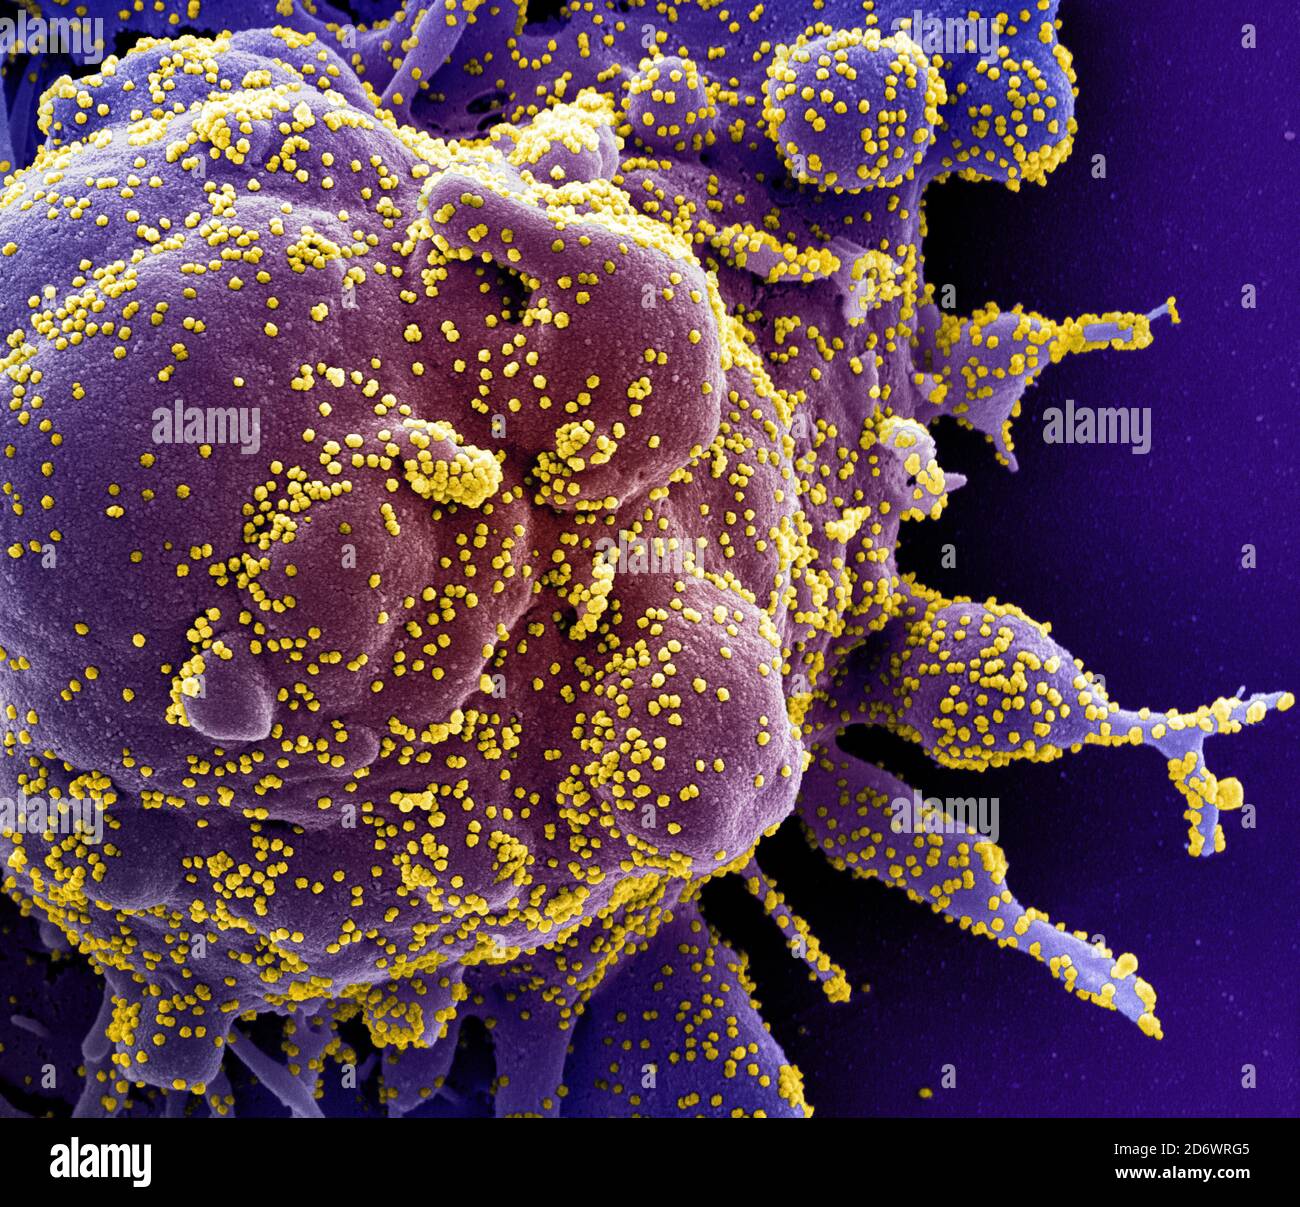 Micrografia elettronica a scansione colorata di una cellula apoptotica (viola) fortemente infettata con particelle di virus SARS-COV-2 (giallo), isolata da un paziente Foto Stock